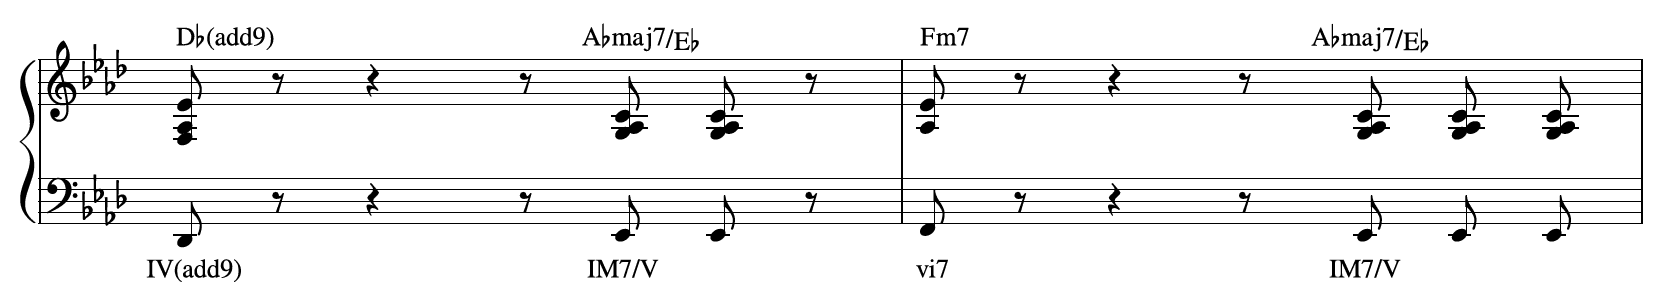 Harmonic-1